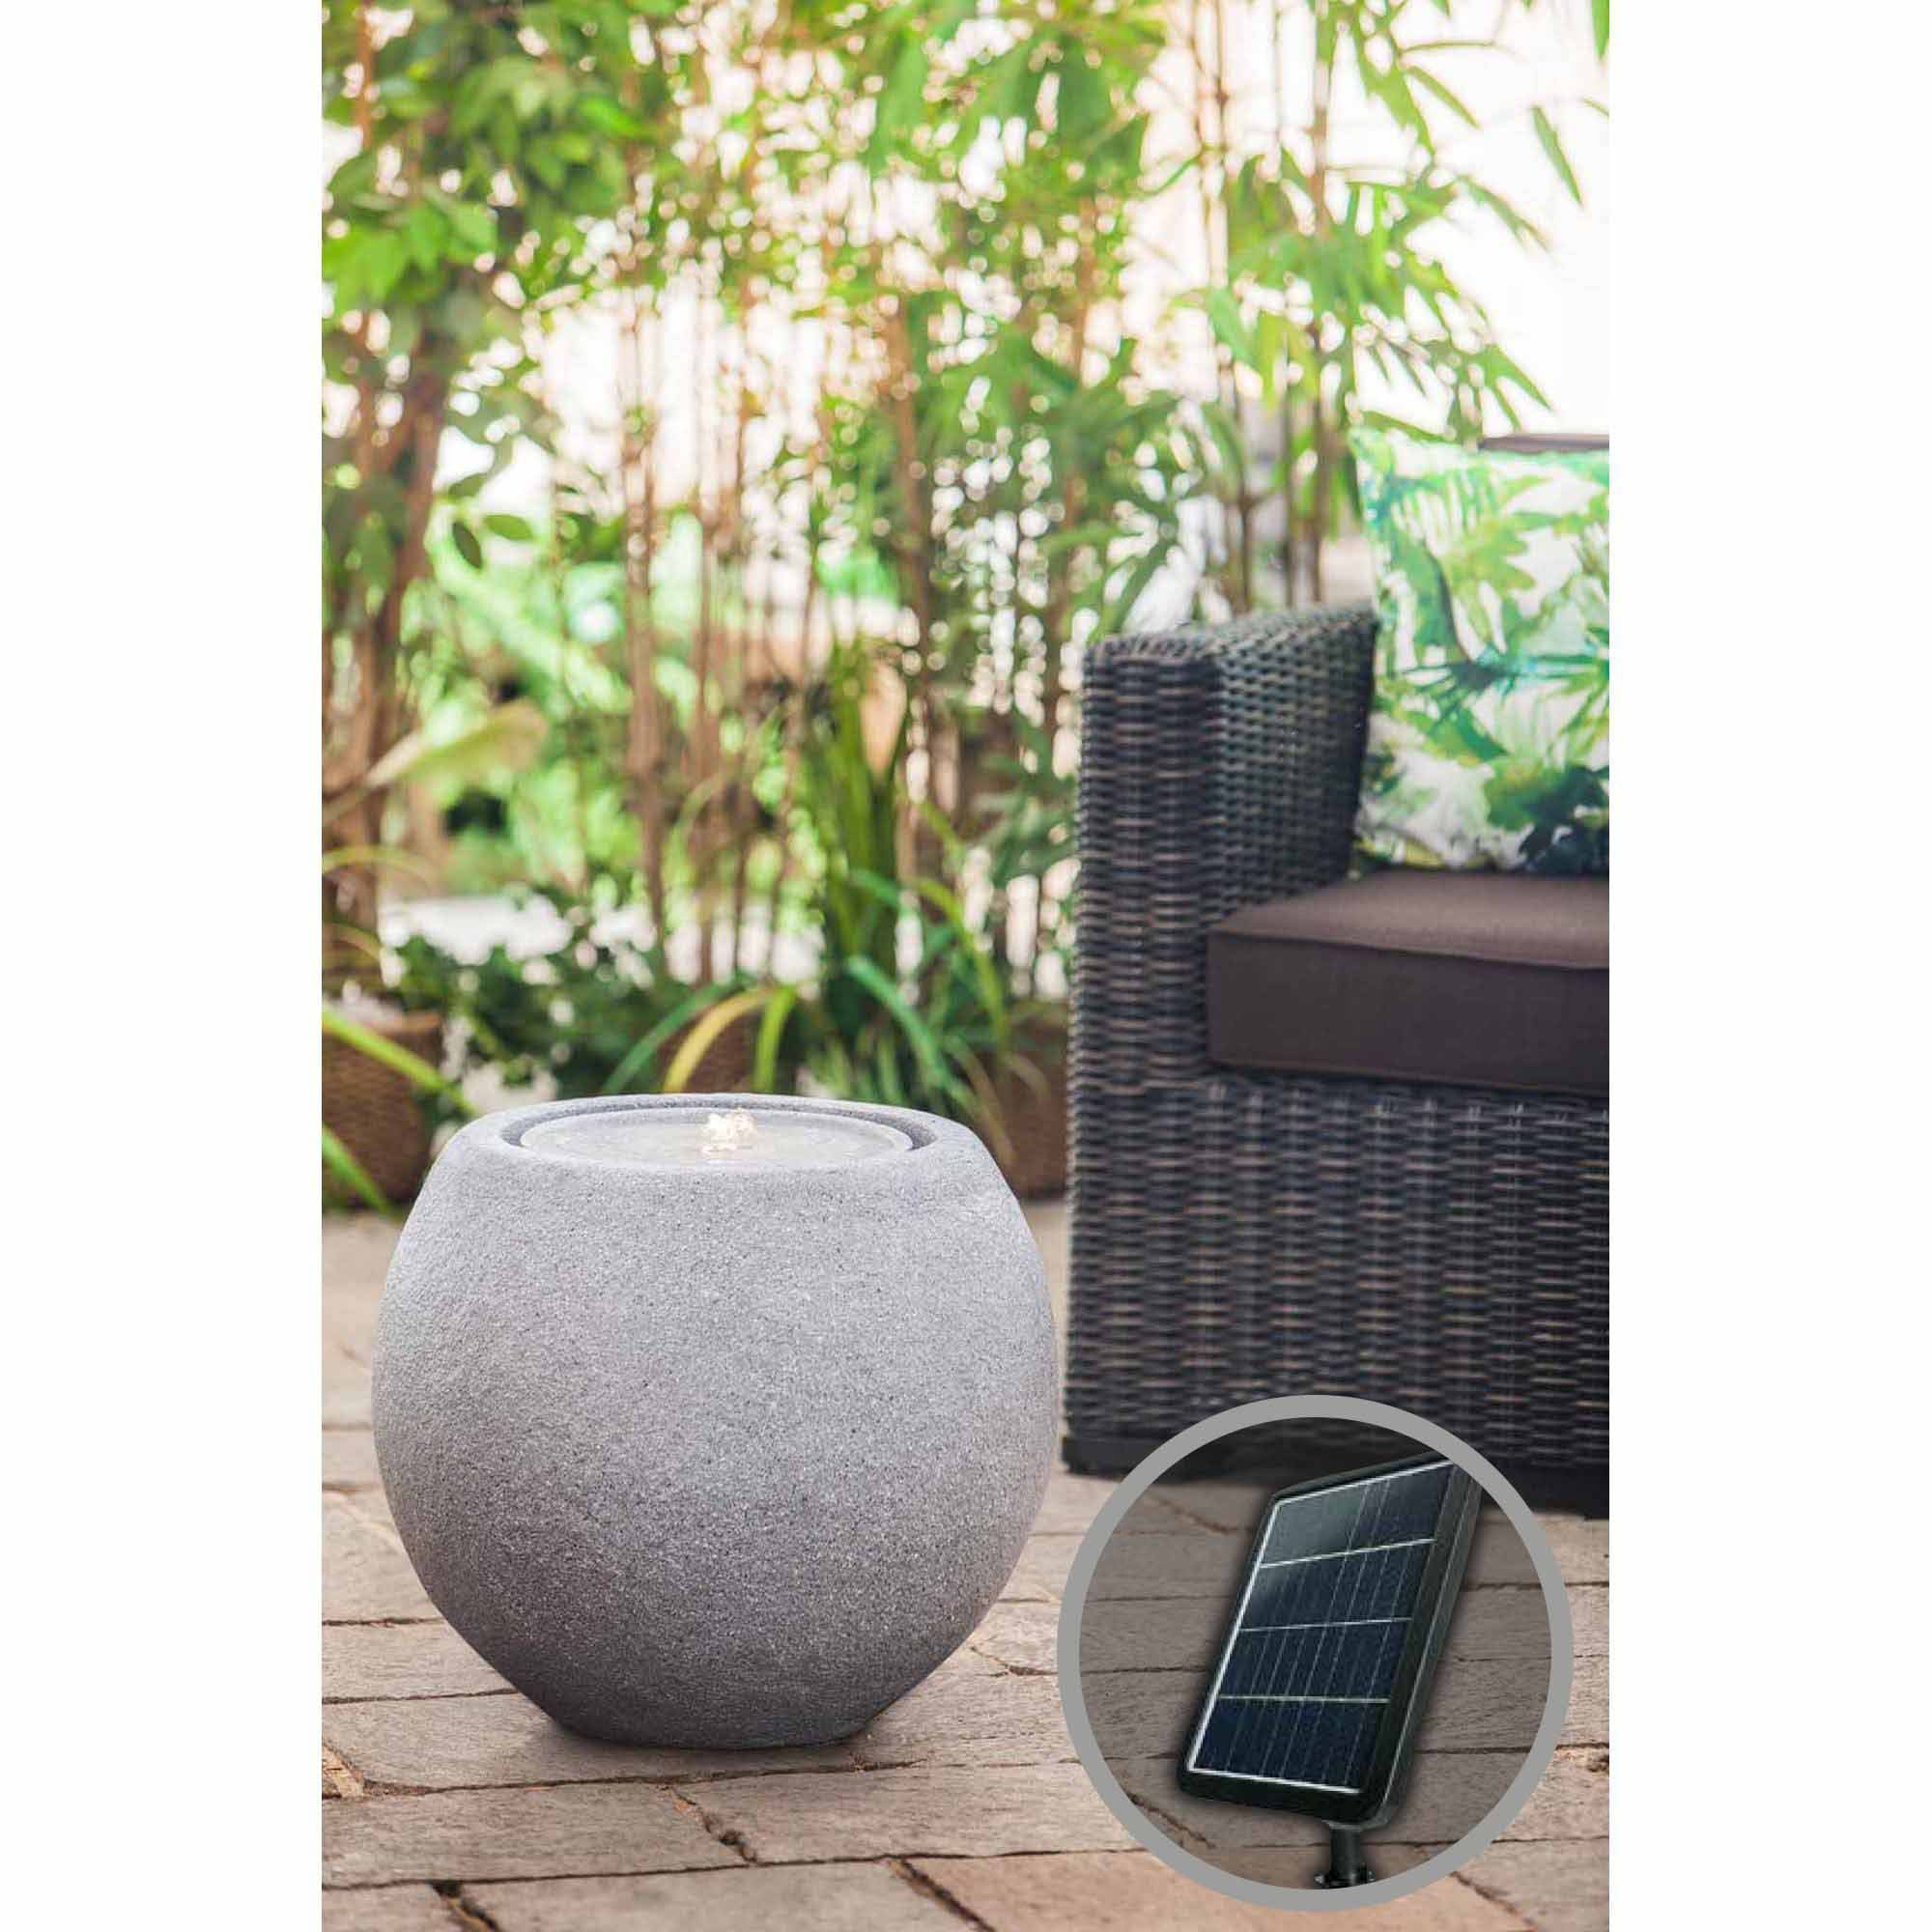 Solar-Gartenbrunnen Ball mit Akku und LED, grau, 50x50x43cm